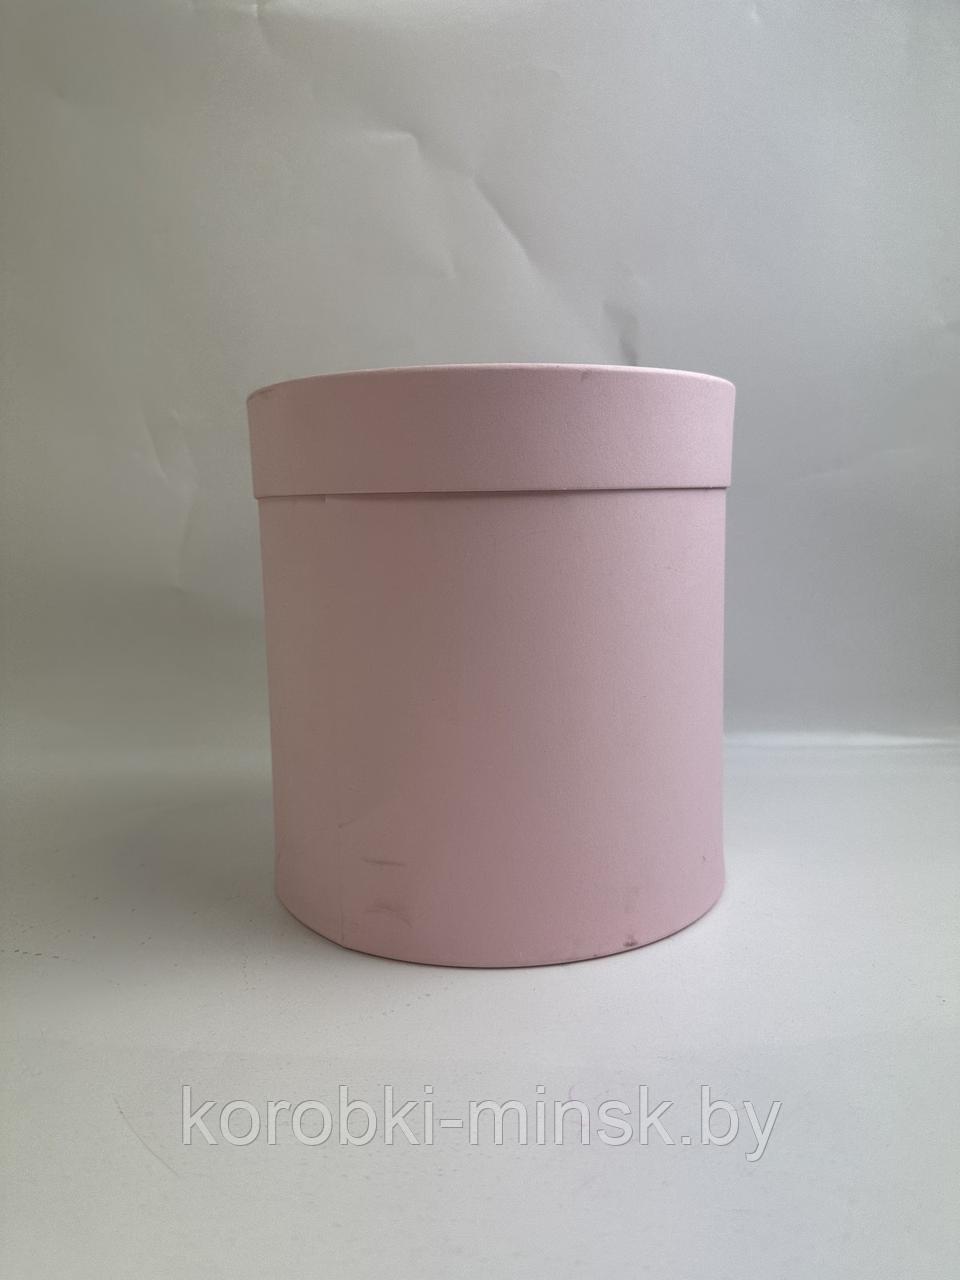 Шляпная коробка эконом вариант 18 см. Цвет: Нежно-розовый.Брак